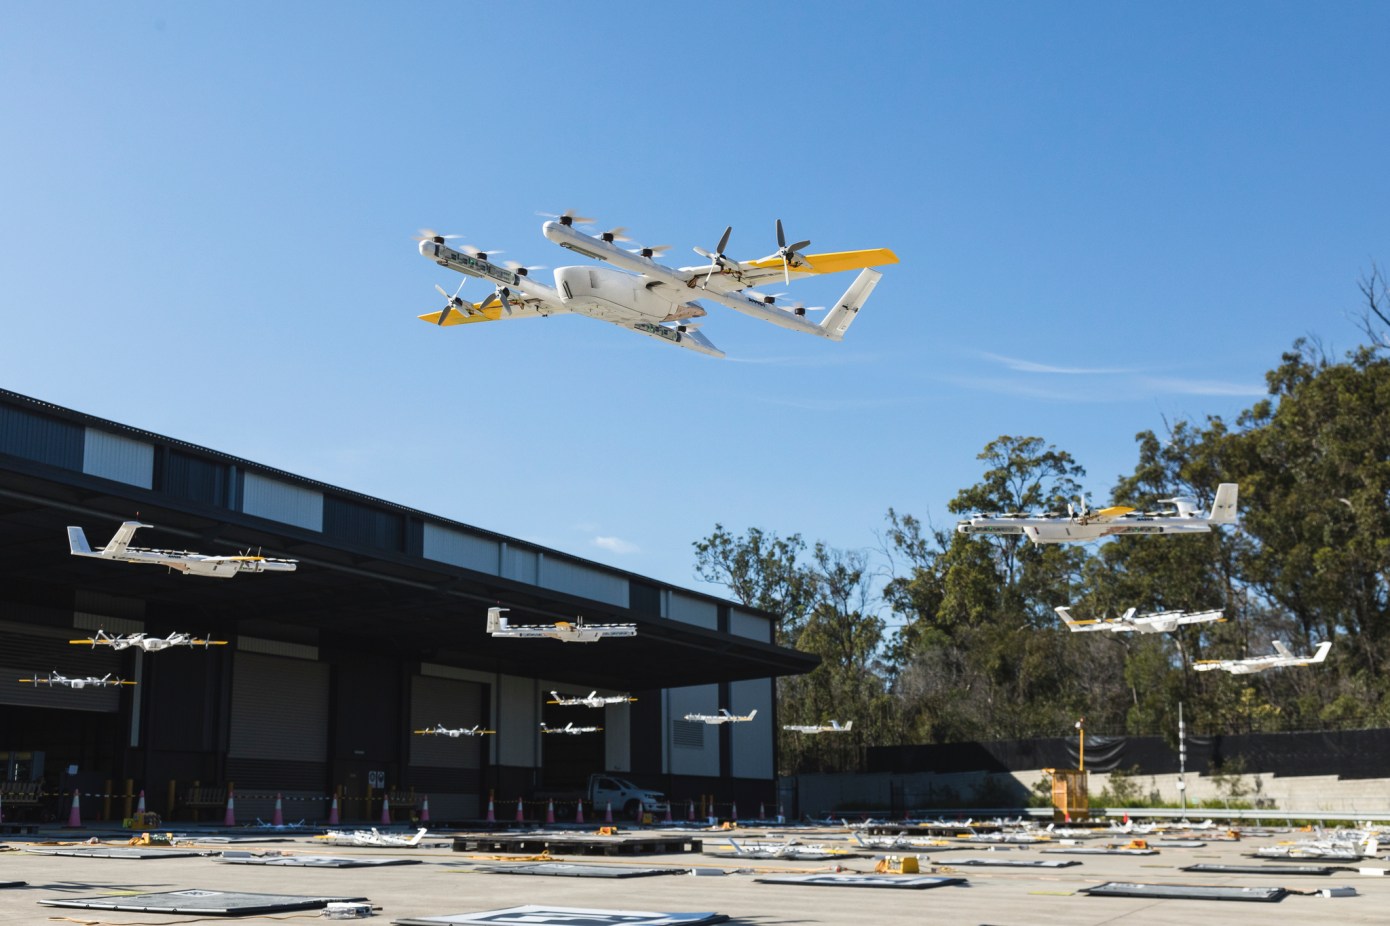 Walmart lancerà la consegna con drone Wing in due supermercati del Texas, negli Stati Uniti